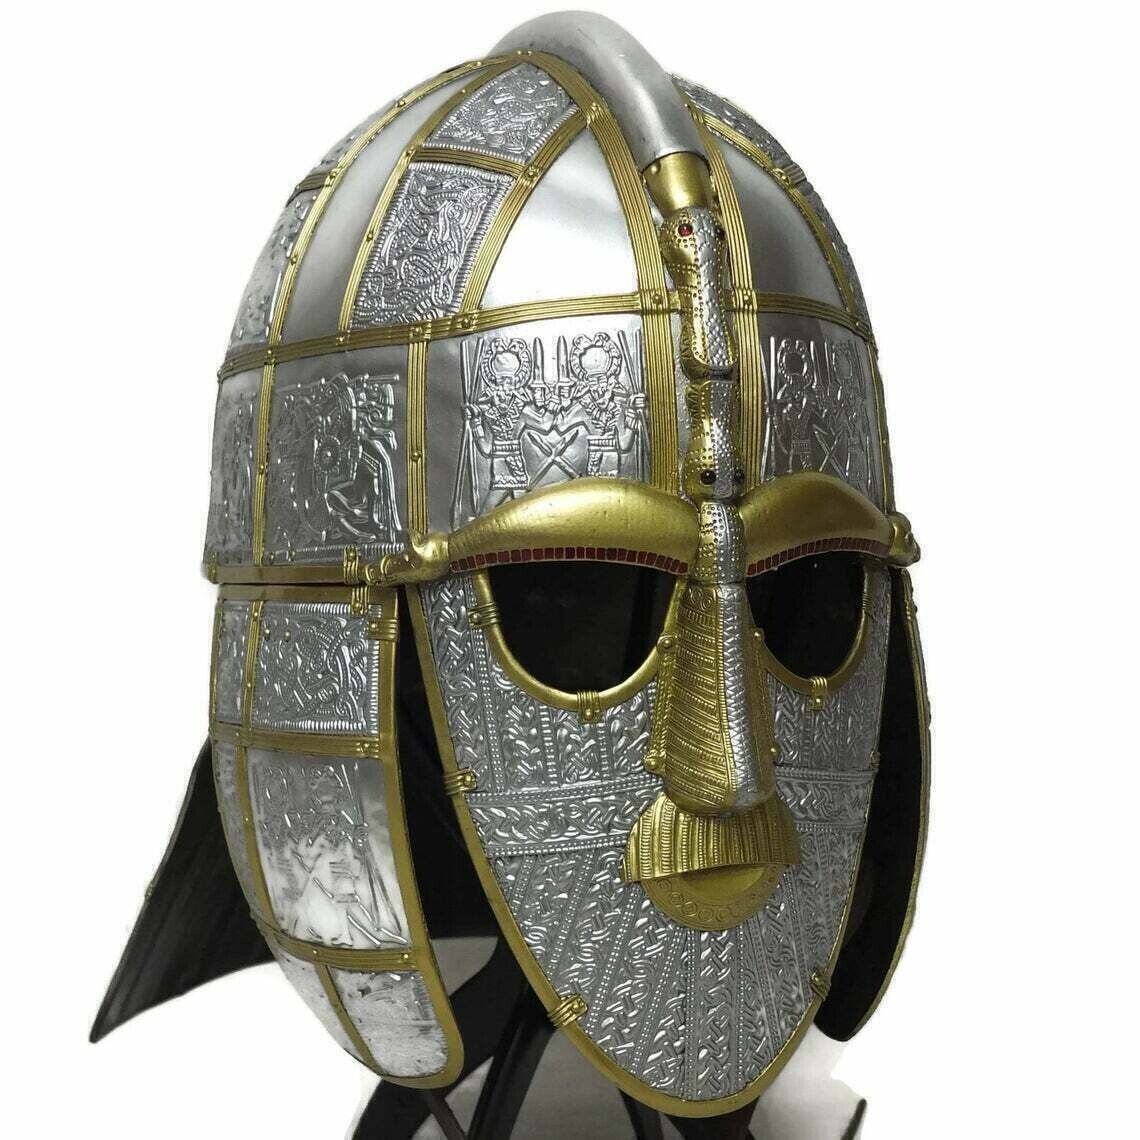 WEEKEND SALE Sutton hoo helmet 7th Century Anglo Saxon Pre Viking helmet